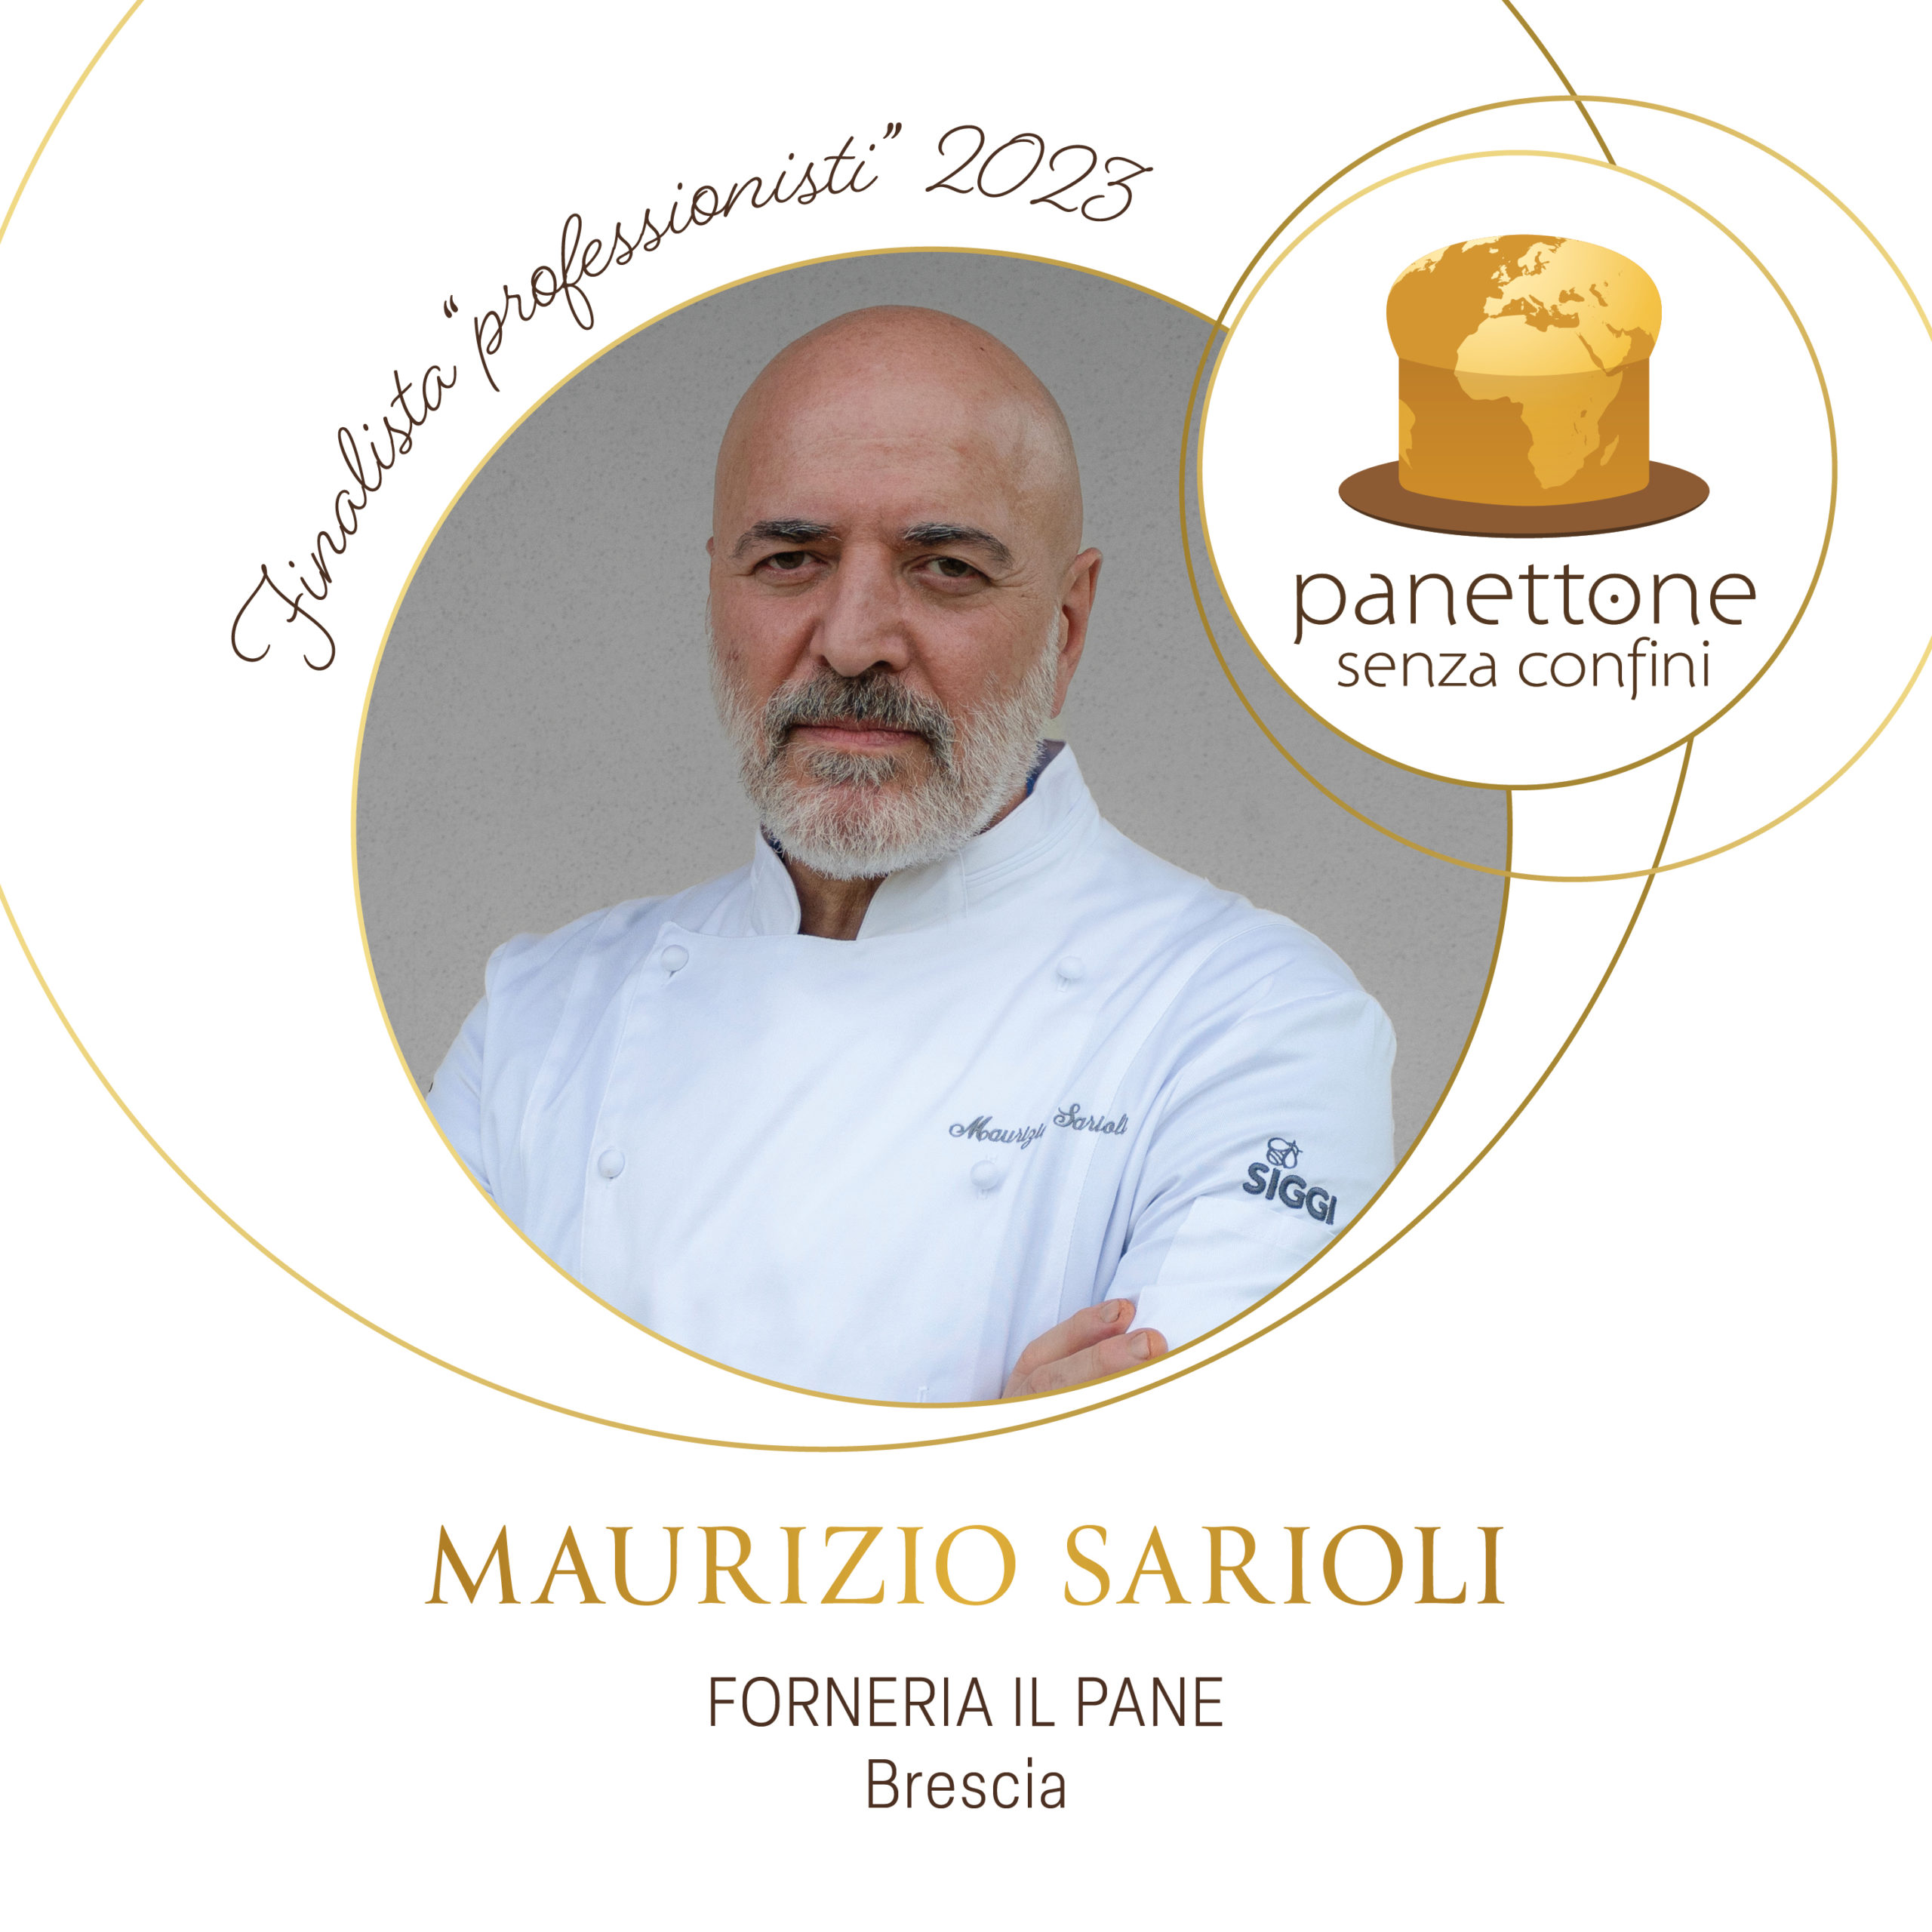 Maurizio Sarioli vince il“Panettone senza confini 2023”